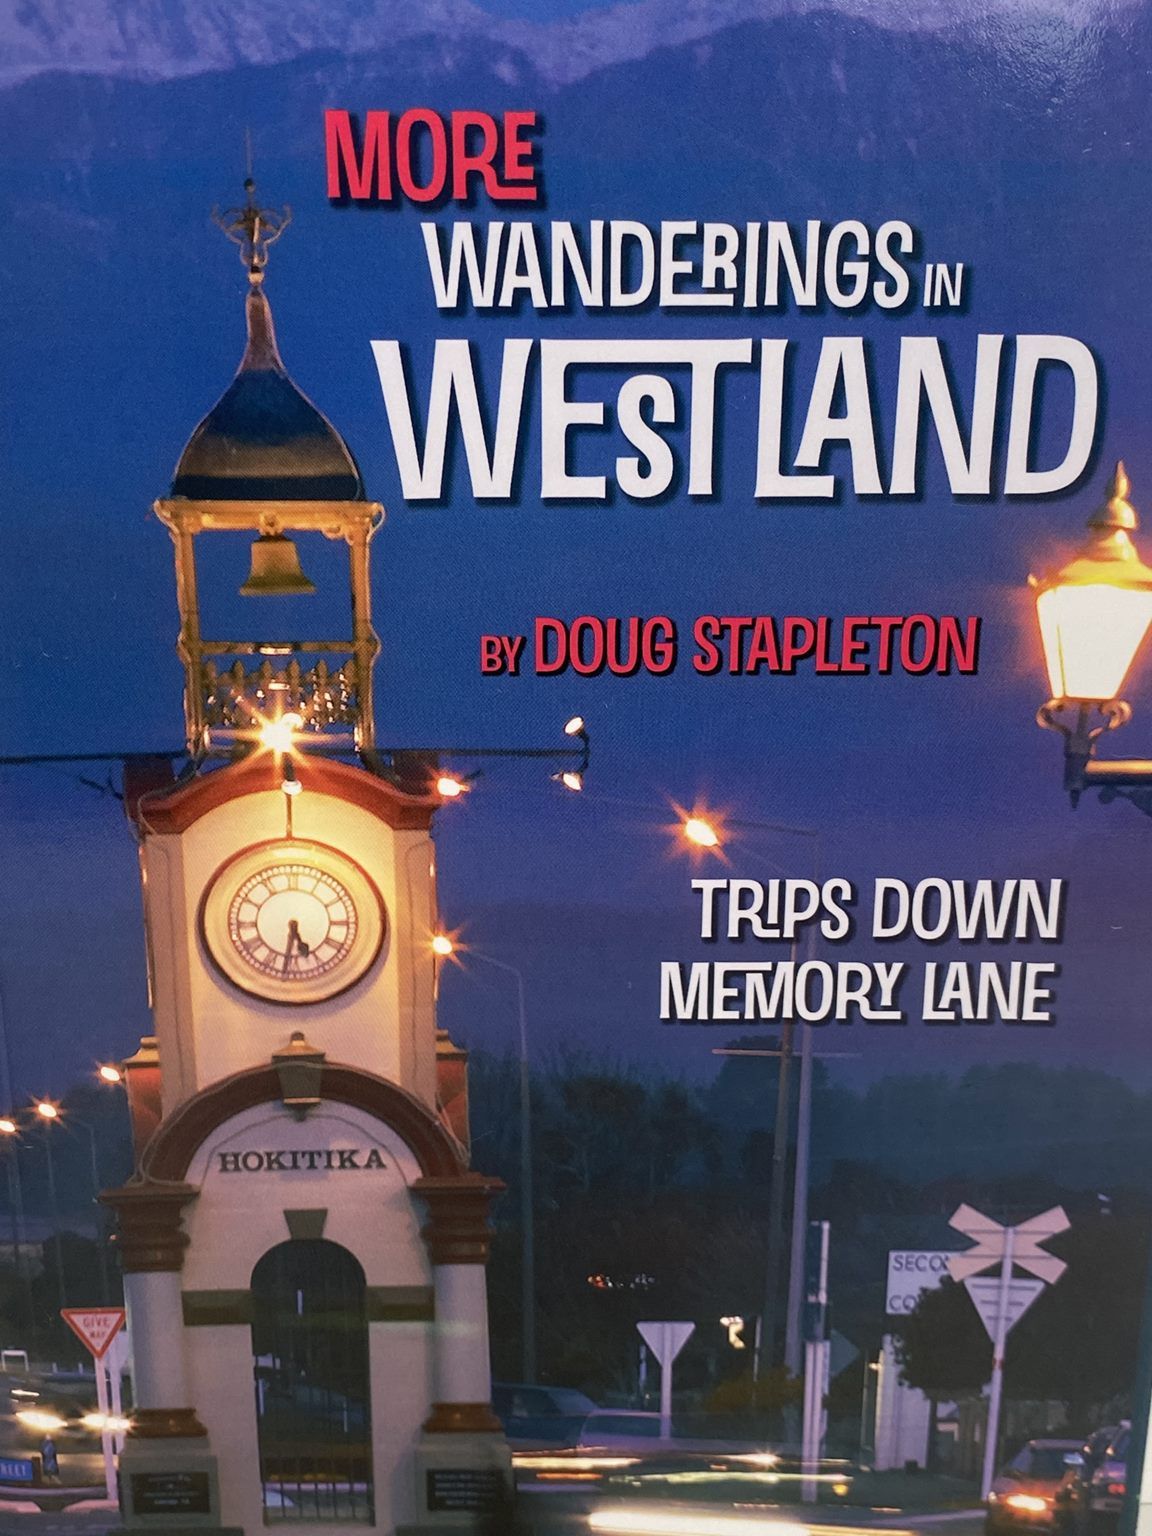 MORE WANDERINGS IN WESTLAND Trips Down Memory Lane